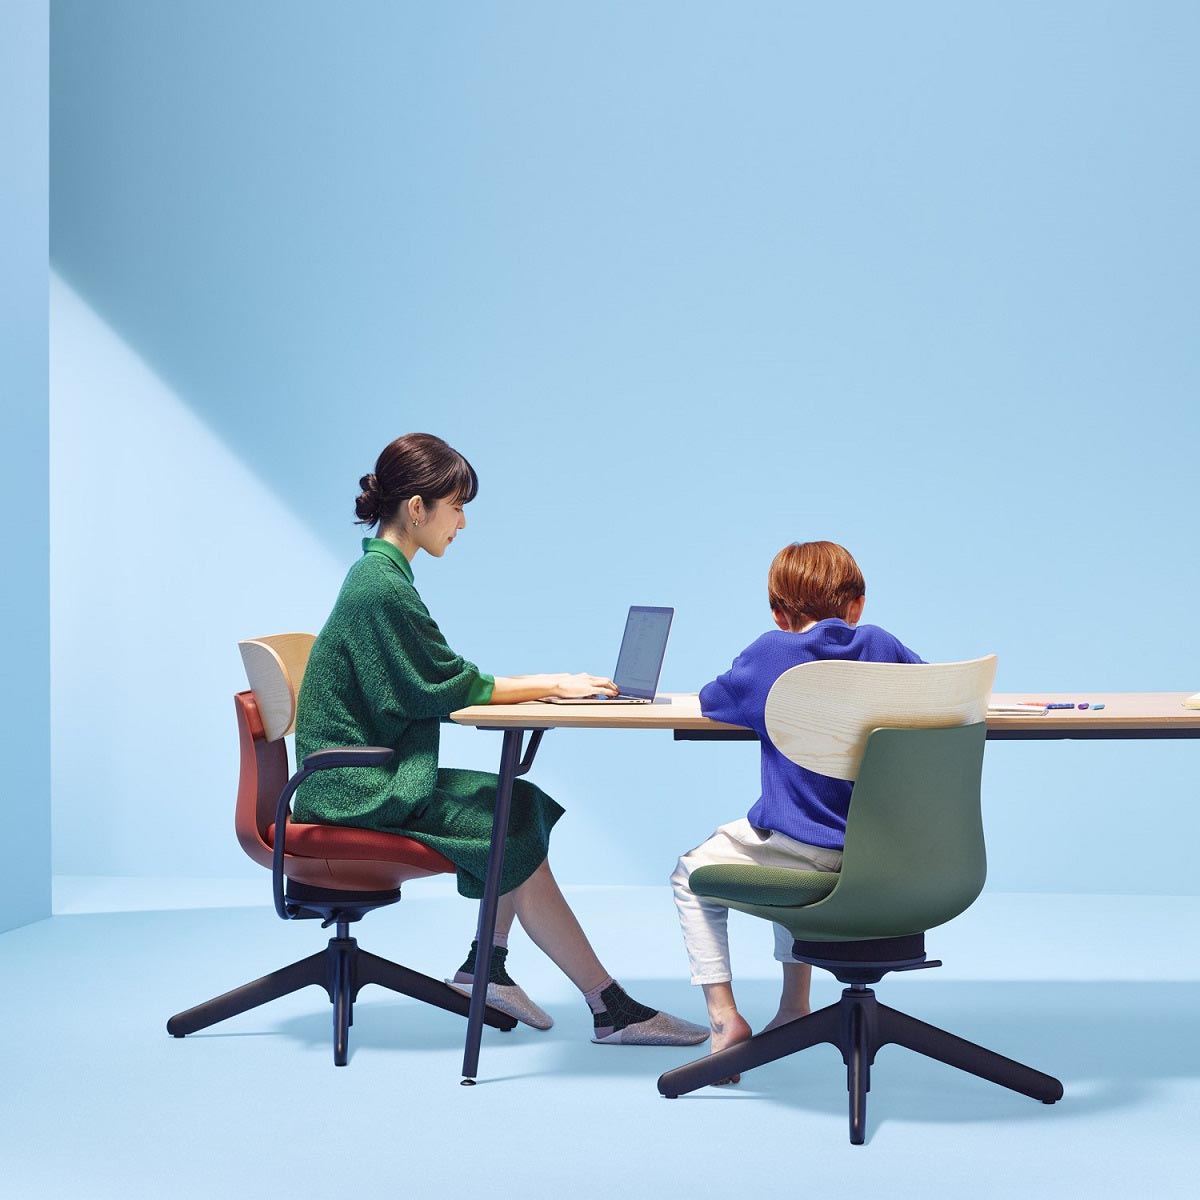 【楽天市場】コクヨ デスクチェア オフィスチェア 椅子 ingLIFE